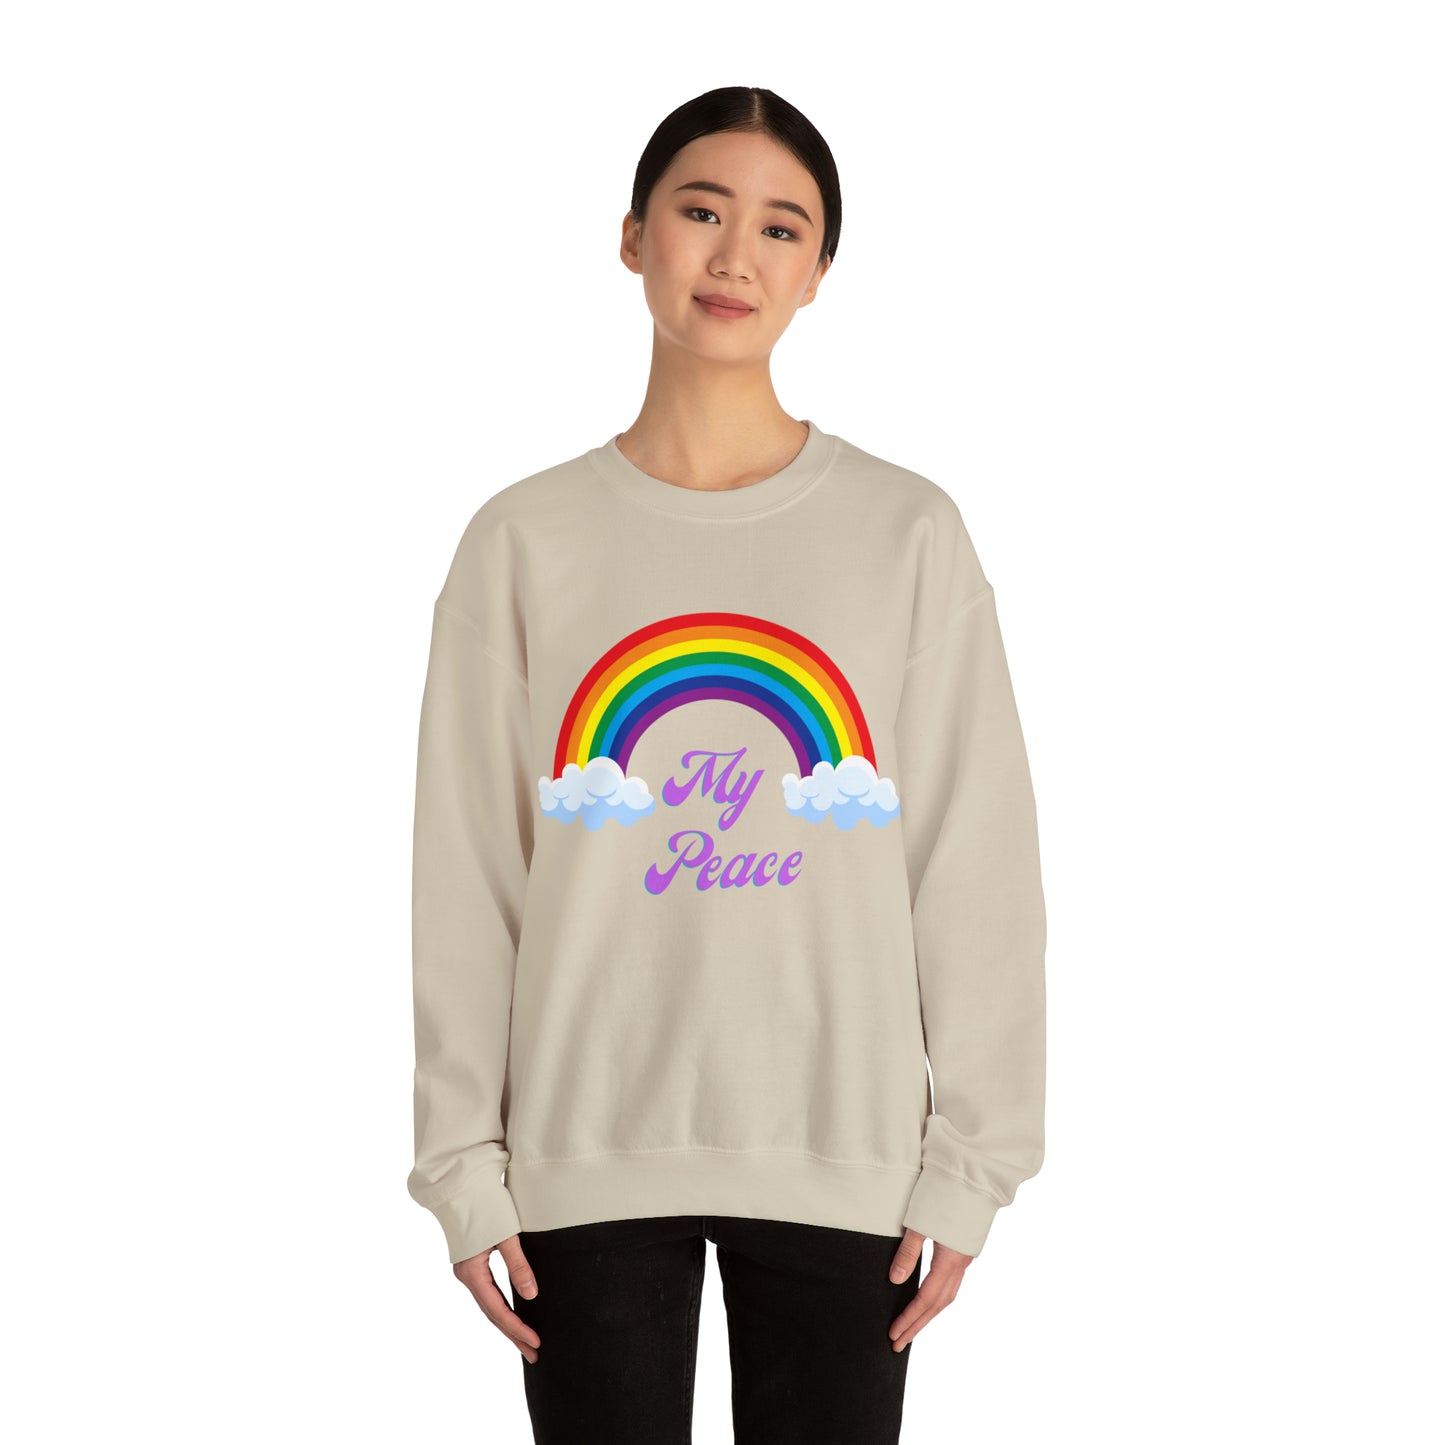 Rainbow design statement Crewneck sweatshirt gift